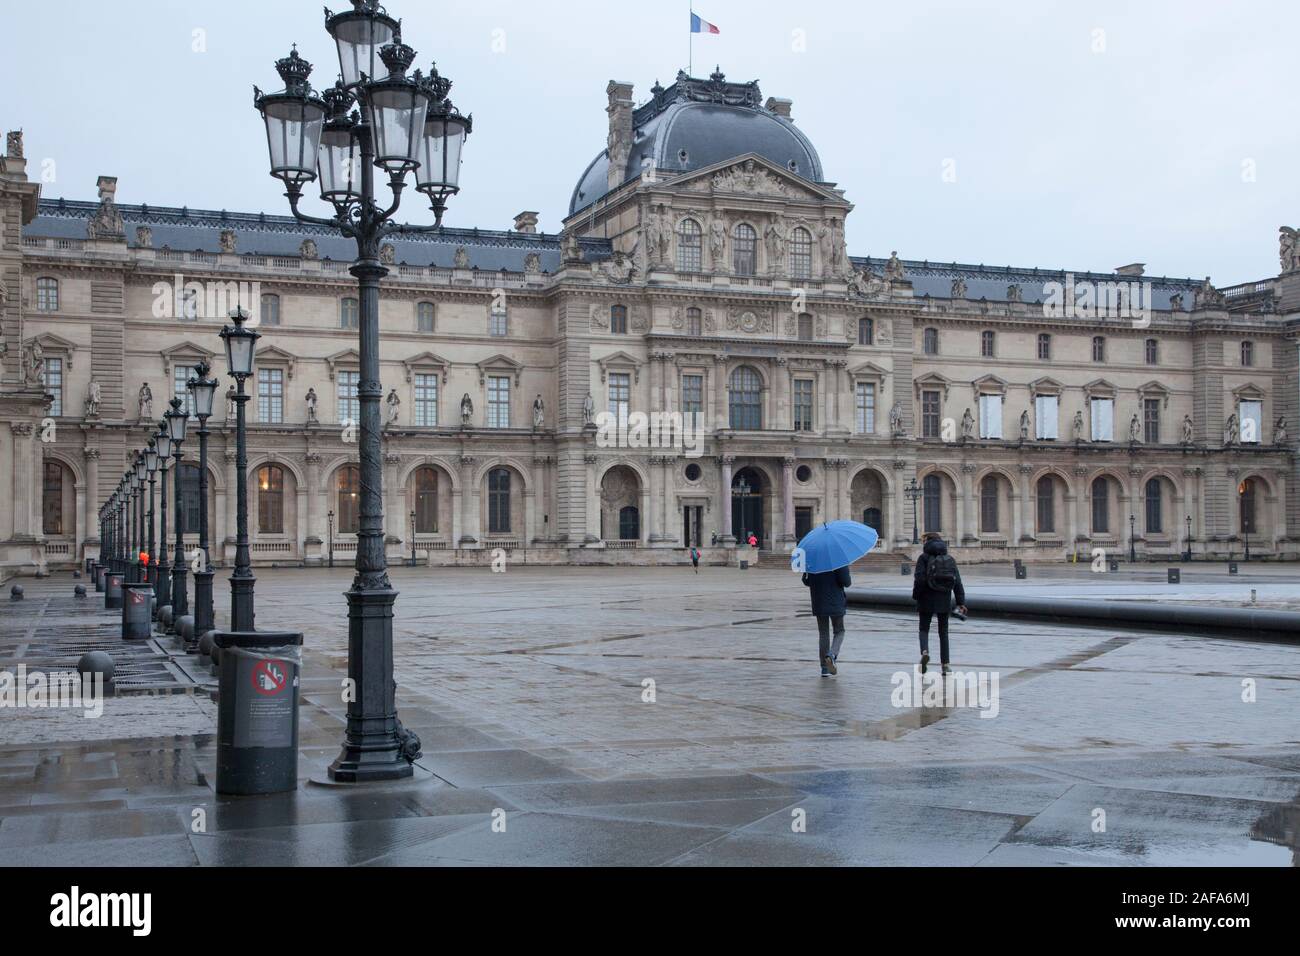 Le Pavillon de l'horloge fait partie du musée du Louvre à Paris complexes. Montré ici tôt un matin d'hiver humide Banque D'Images